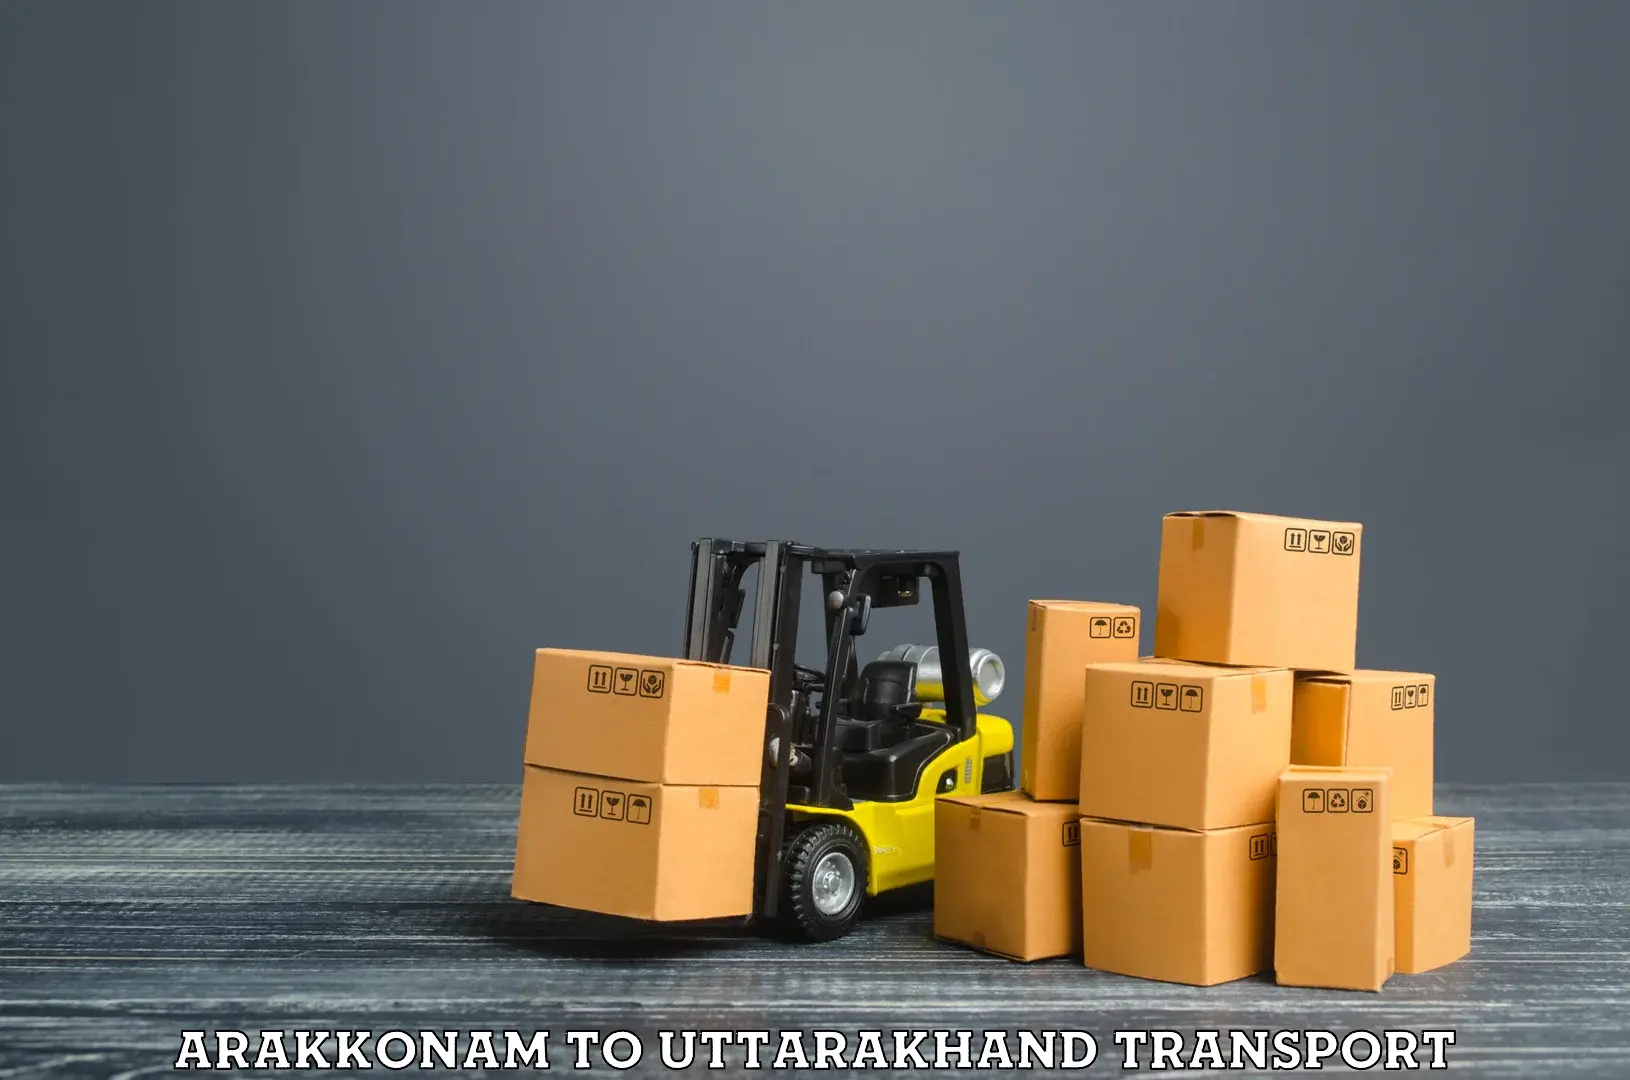 Truck transport companies in India Arakkonam to IIT Roorkee